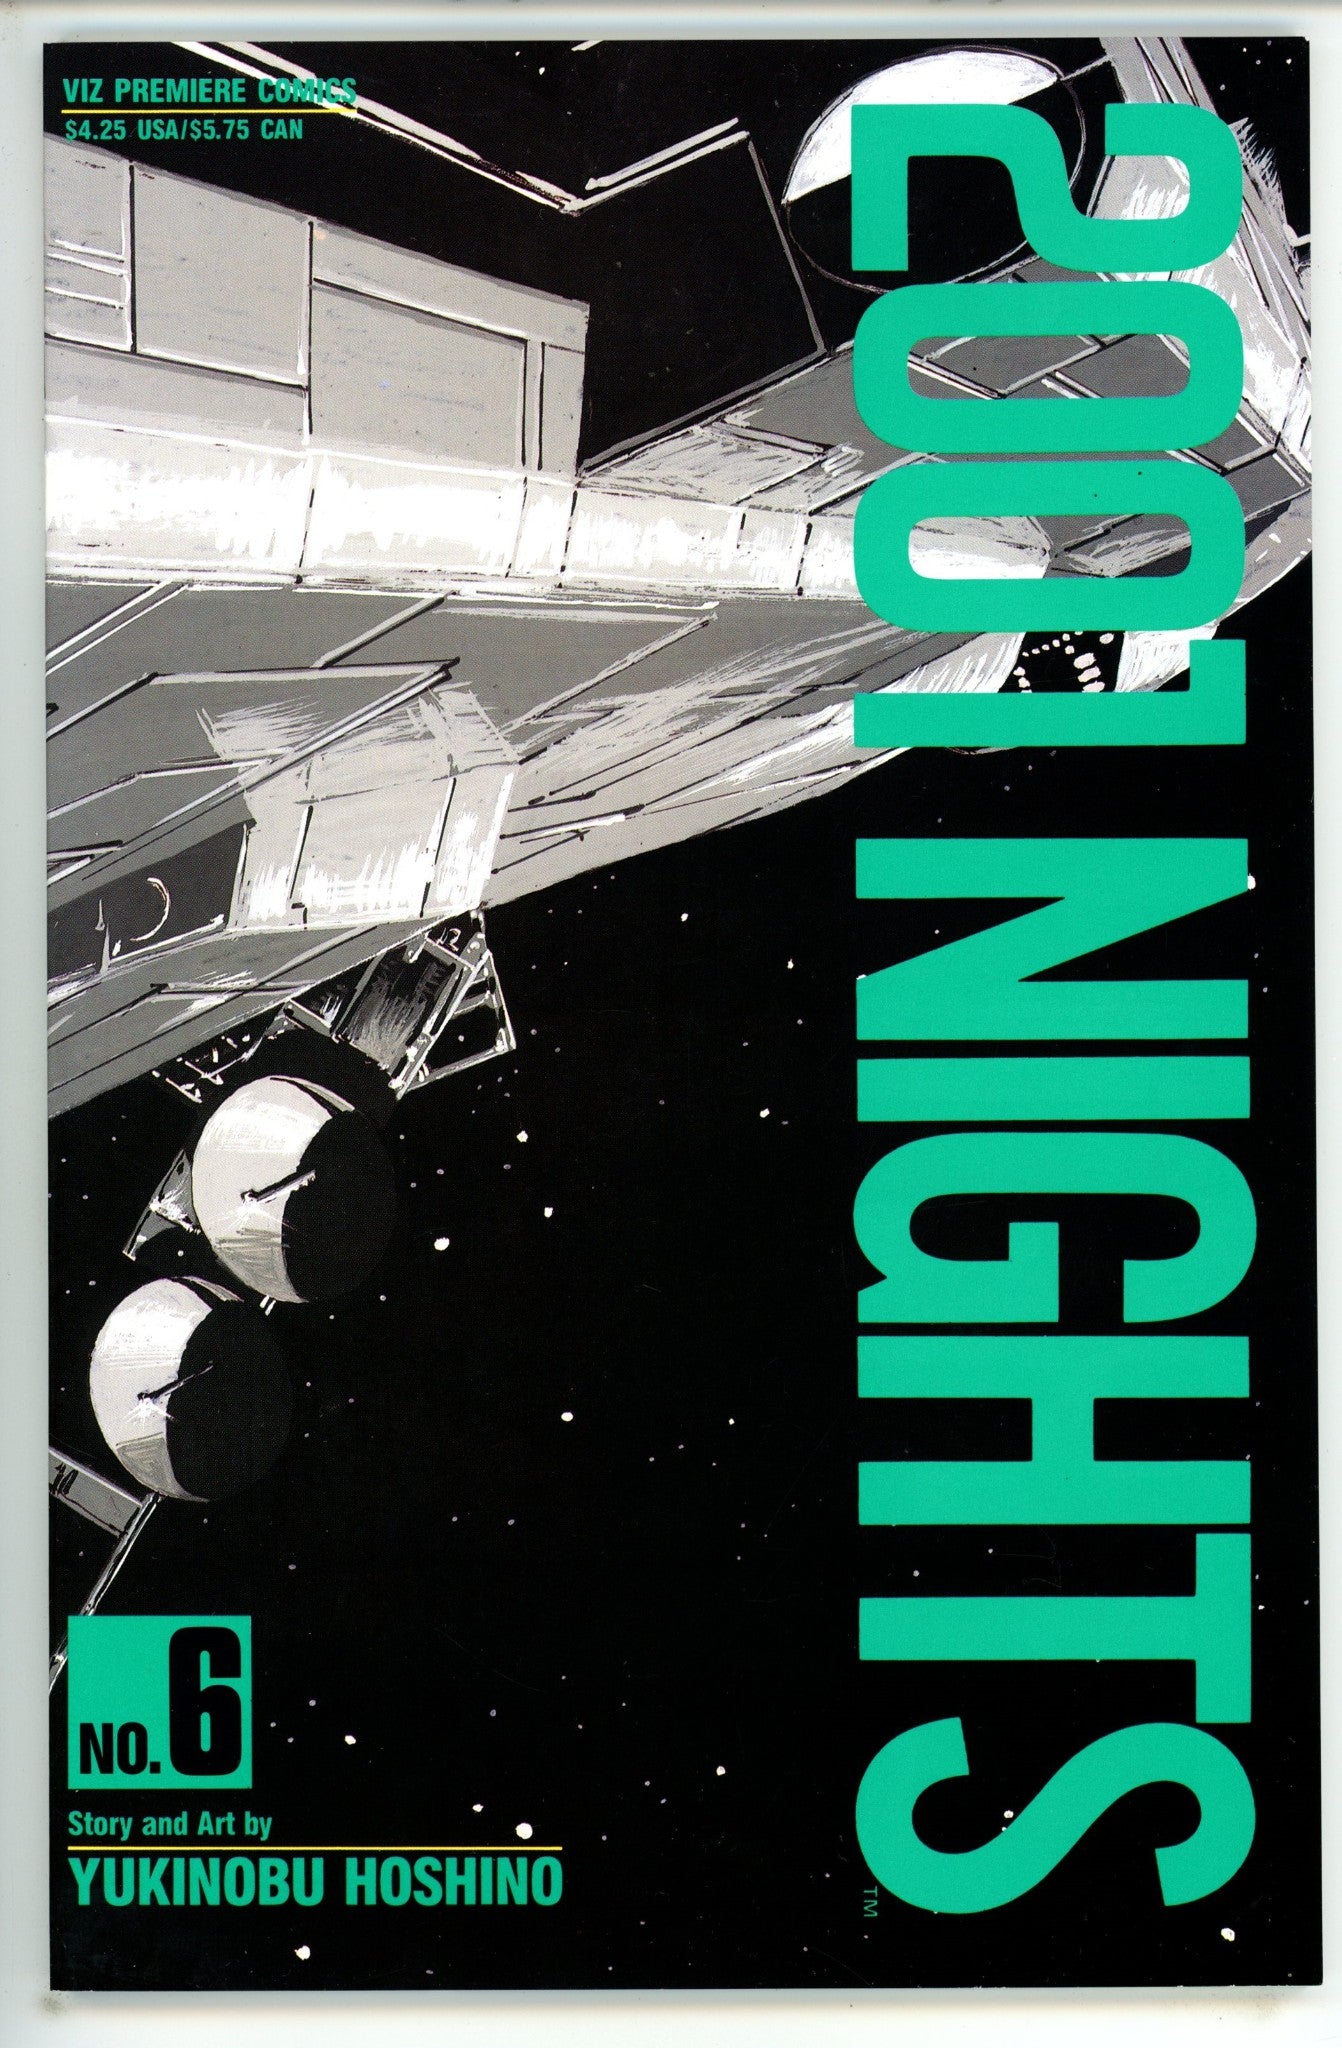 2001 Nights 6 (1990)